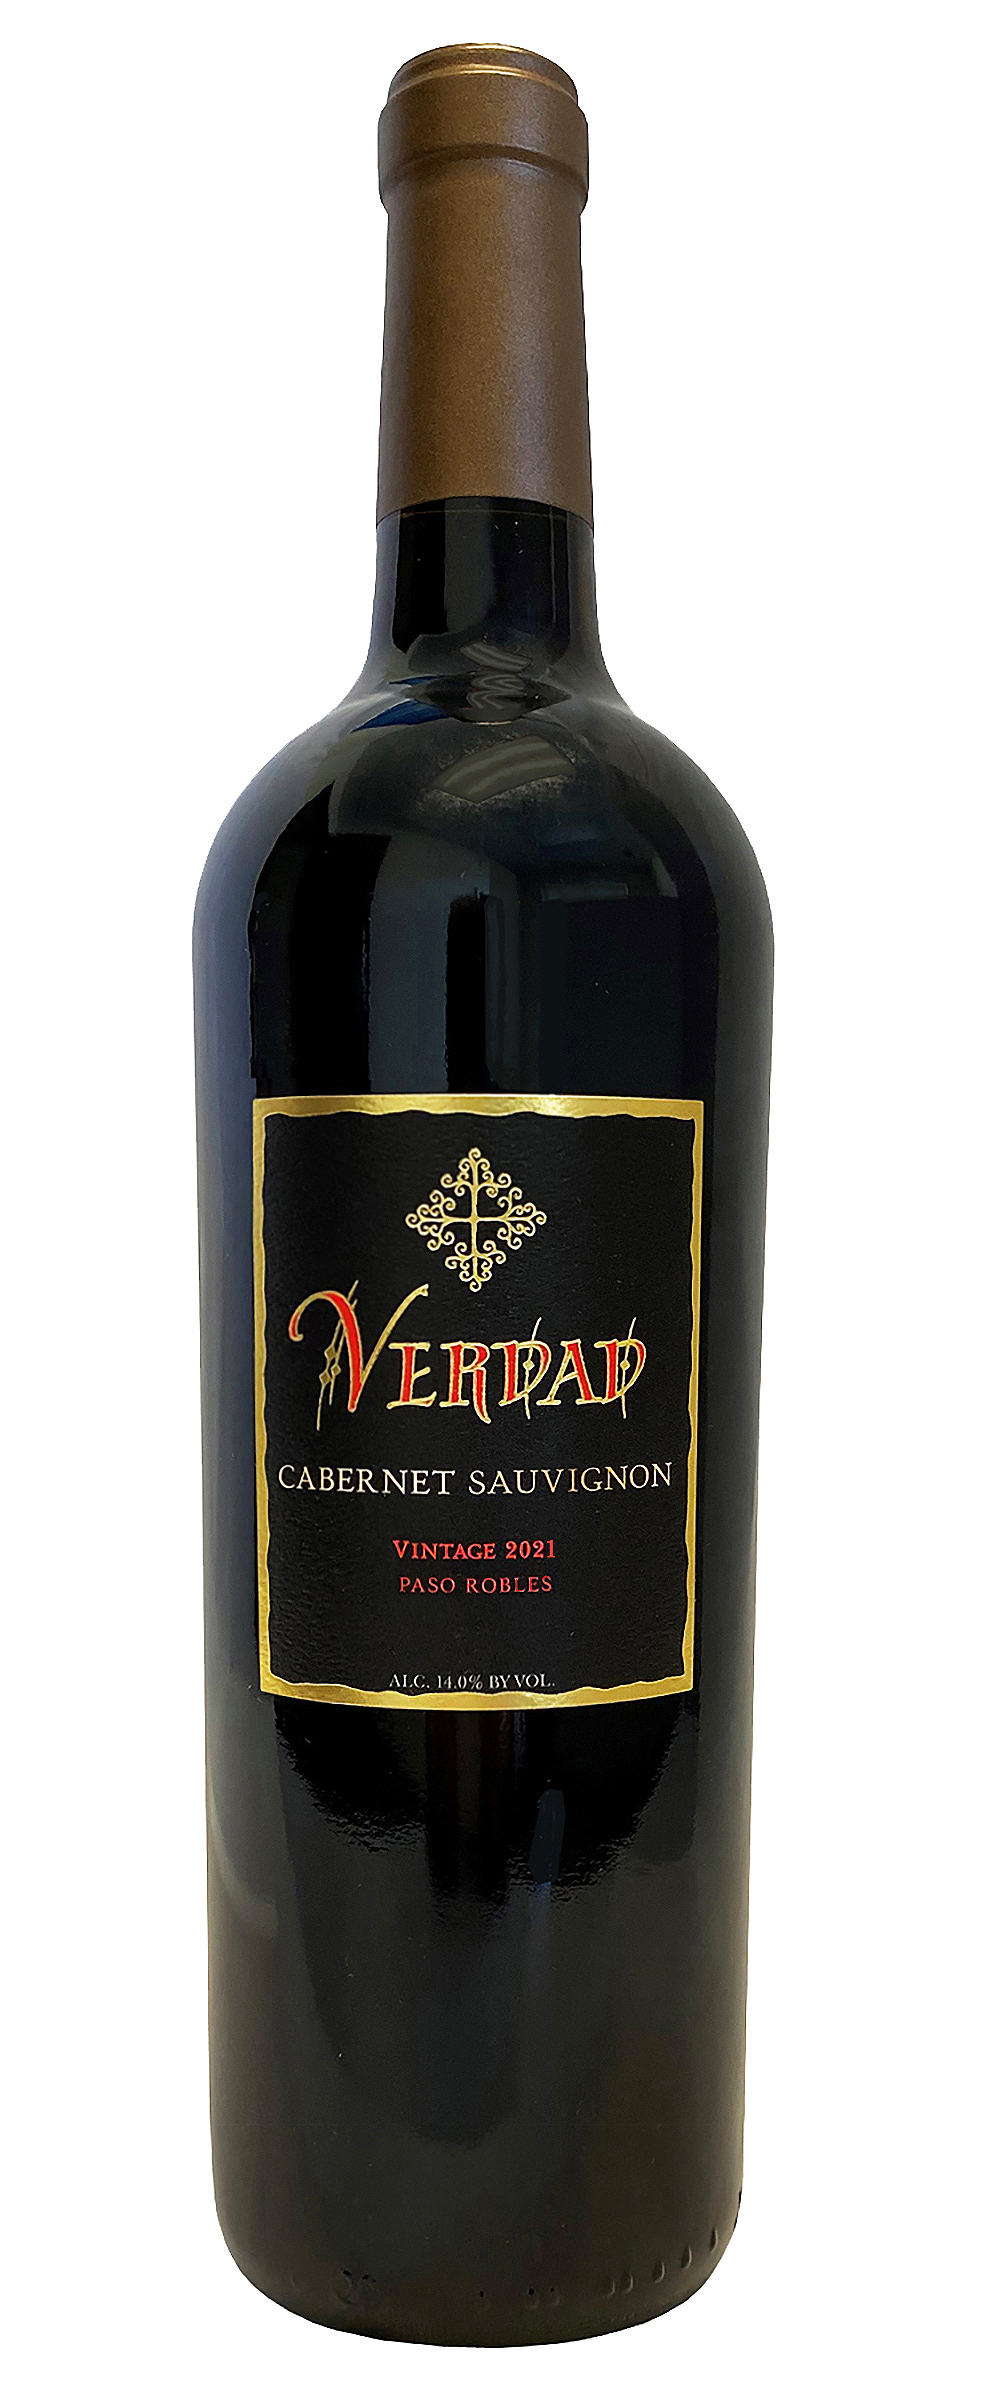 Verdad - Cabernet Sauvignon - Bottle Image